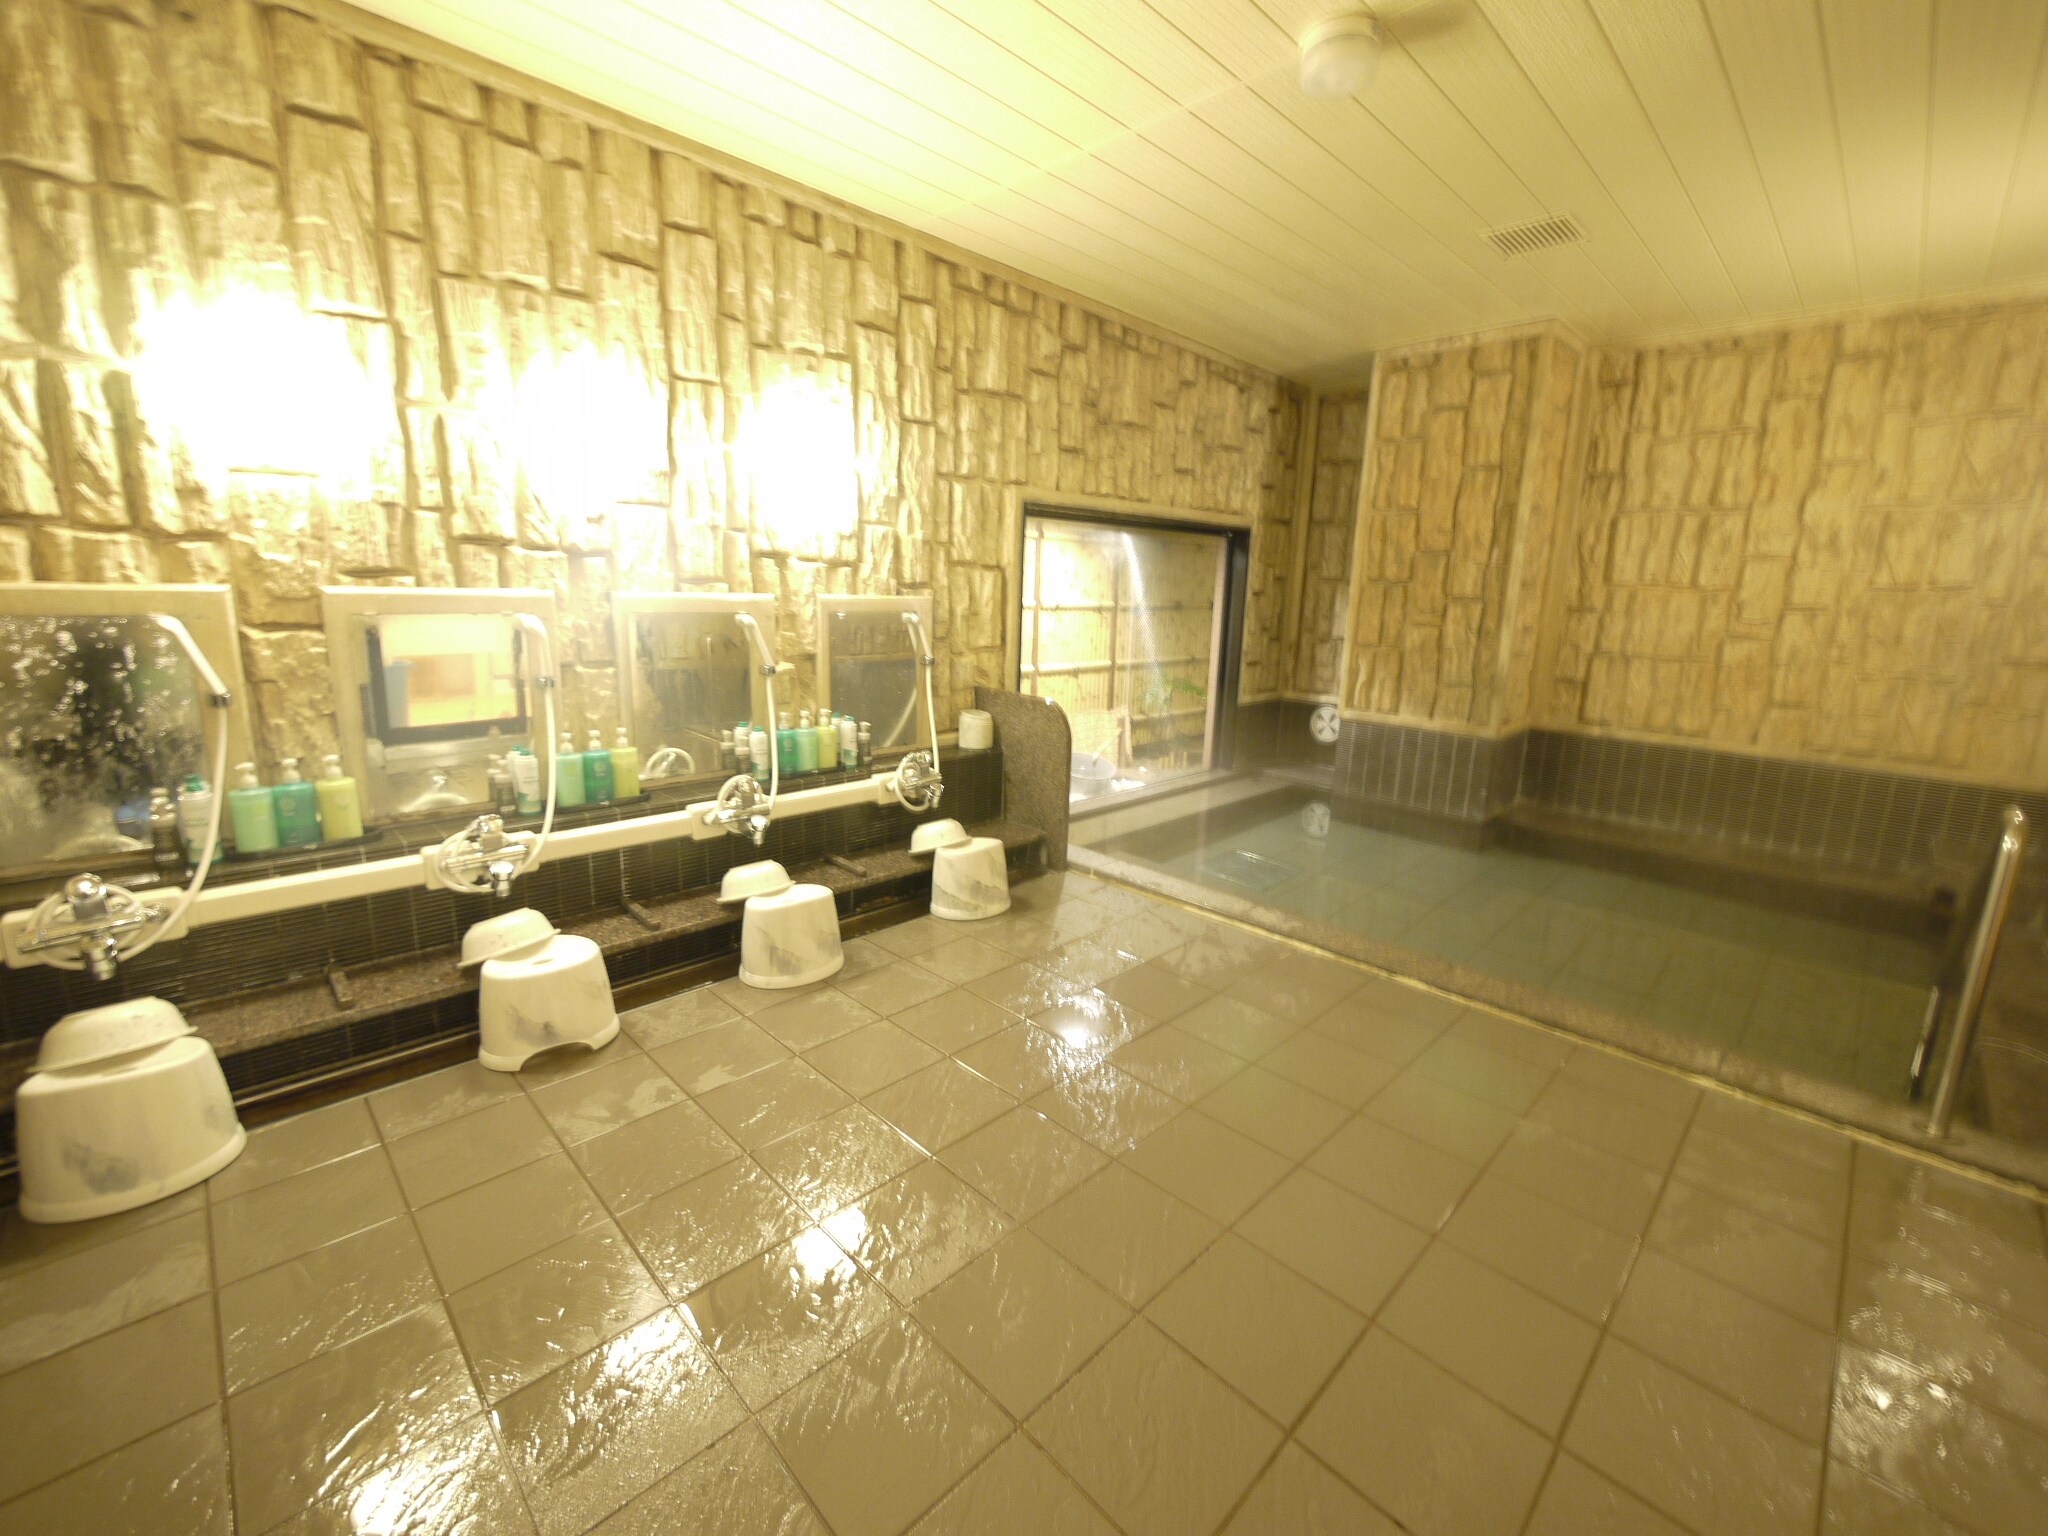 [ห้องอาบน้ำสาธารณะสำหรับผู้ชาย] น้ำร้อนสำหรับนักท่องเที่ยวให้บริการระหว่างเวลา 15:00 น. - 2:00 น. และ 05:00 น. - 10:00 น.